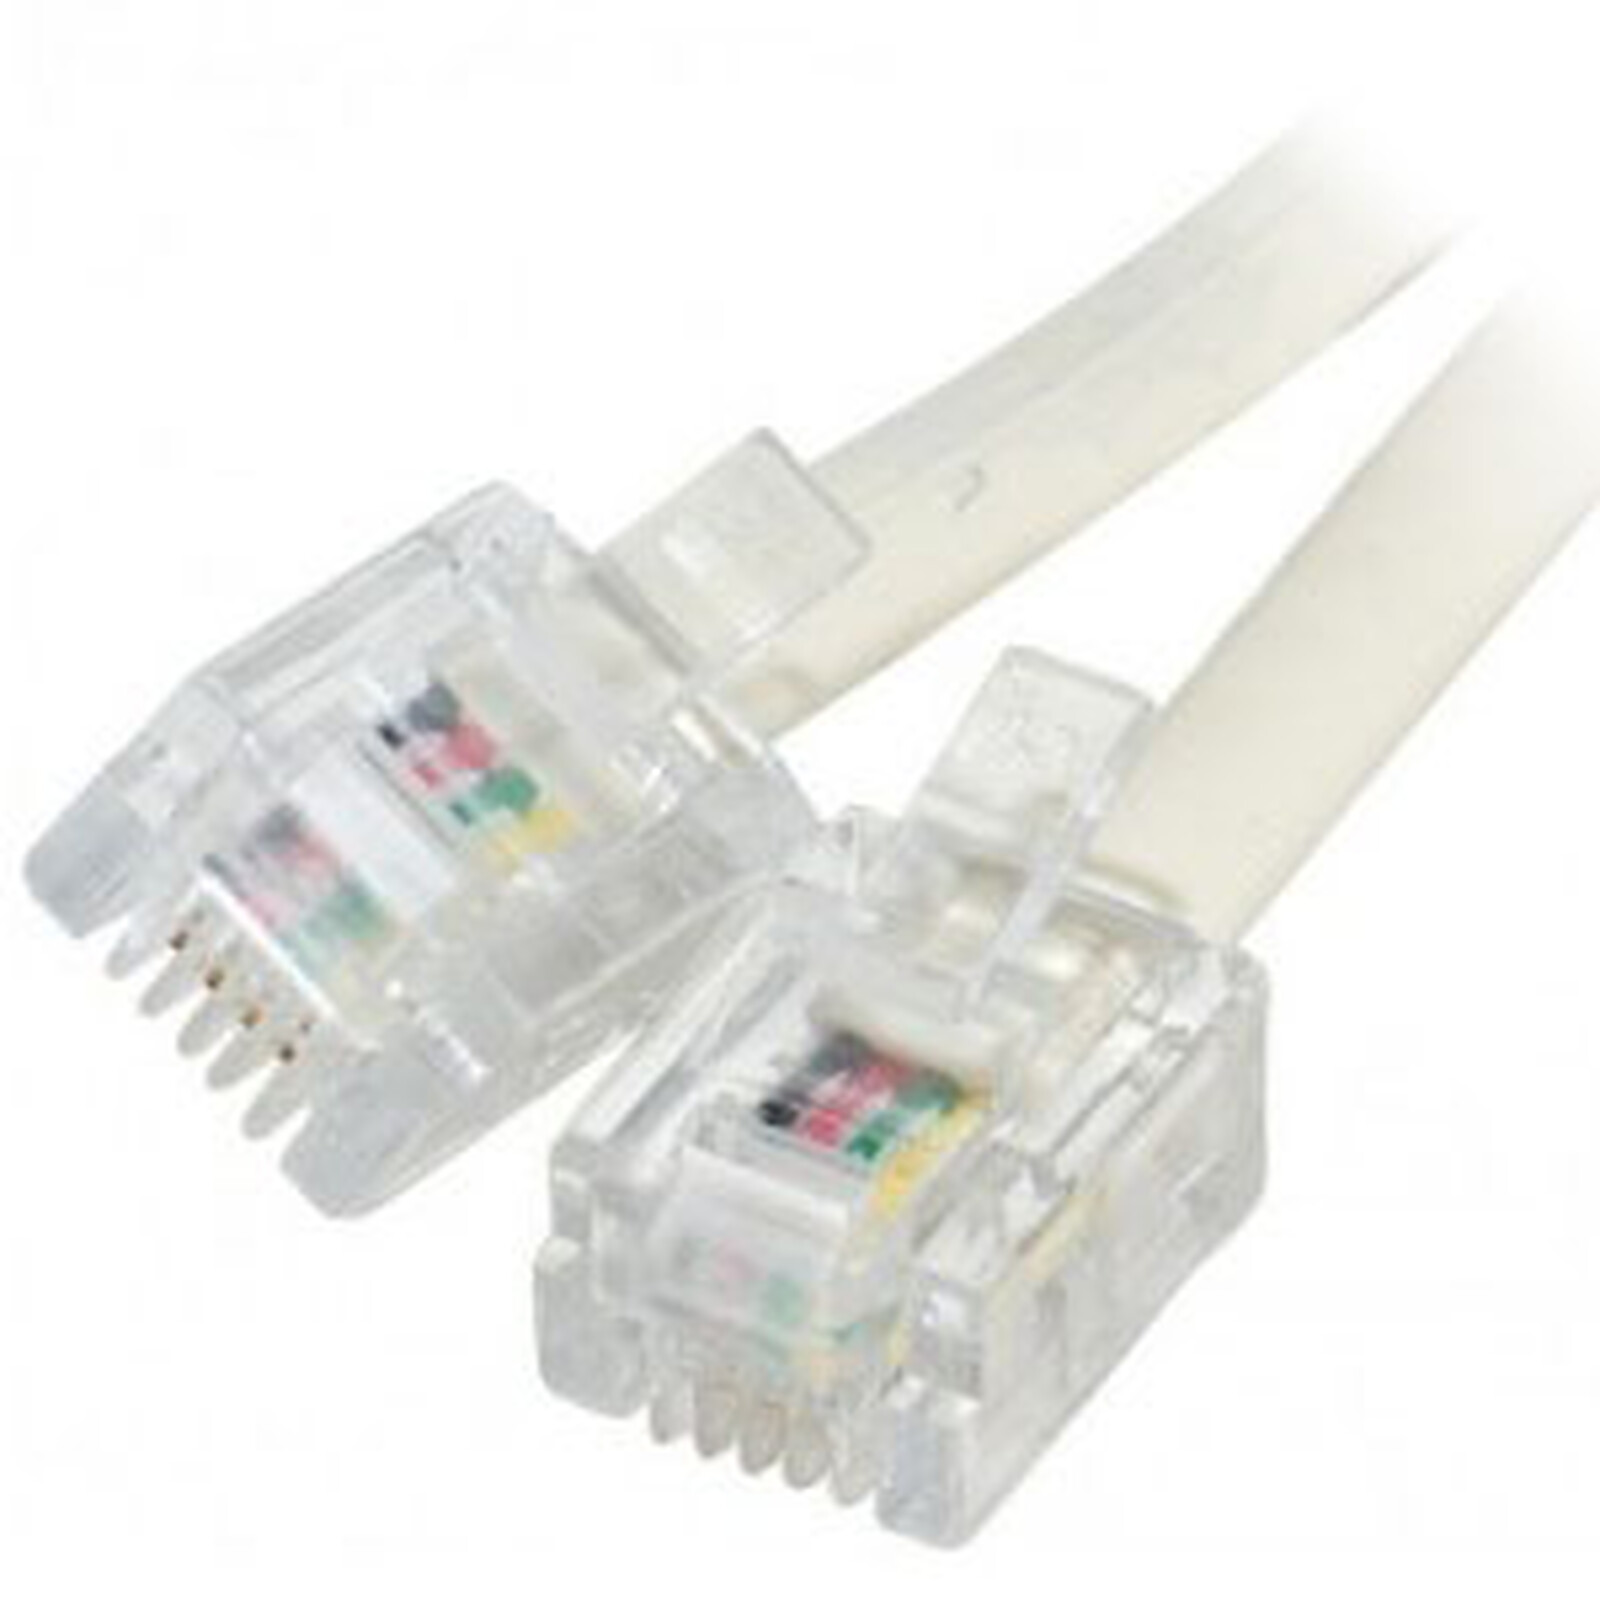 Câble ADSL/Modem Plat RJ11 téléphonique mâle/mâle blanc 10 mètres